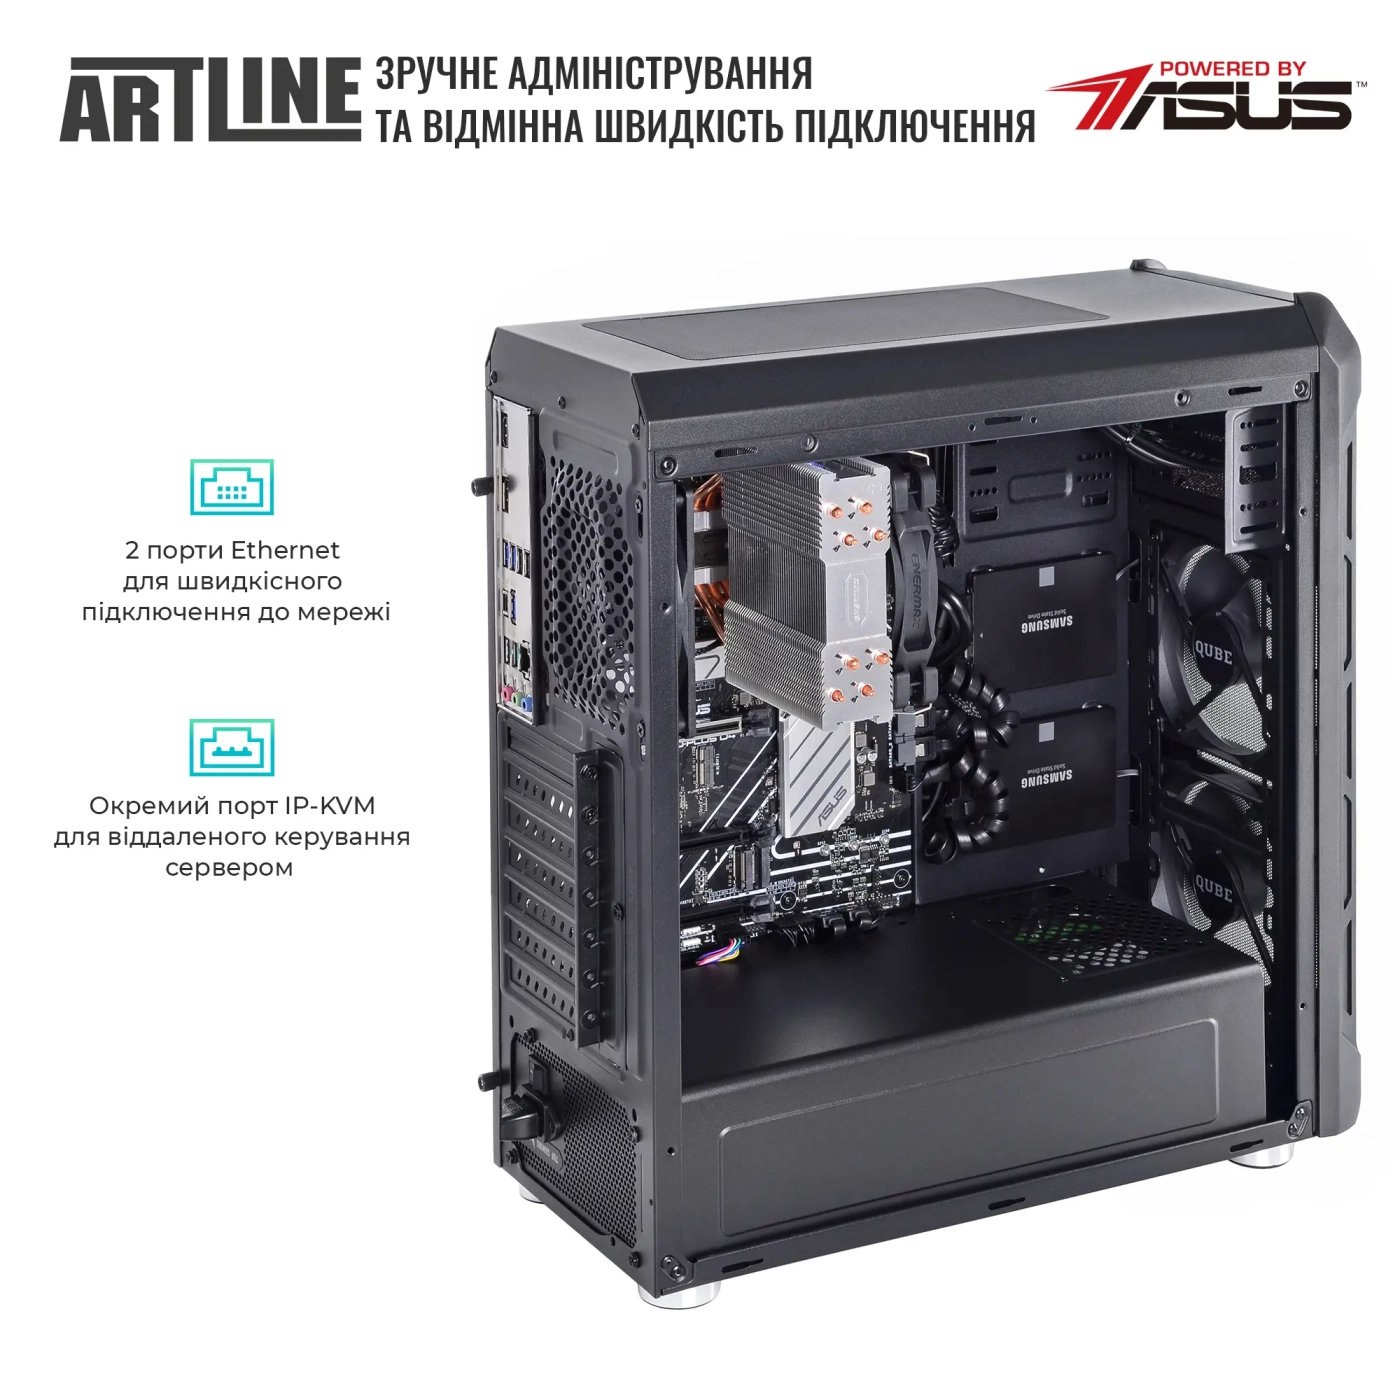 Купить Сервер ARTLINE Business T27 (T27v41) - фото 6